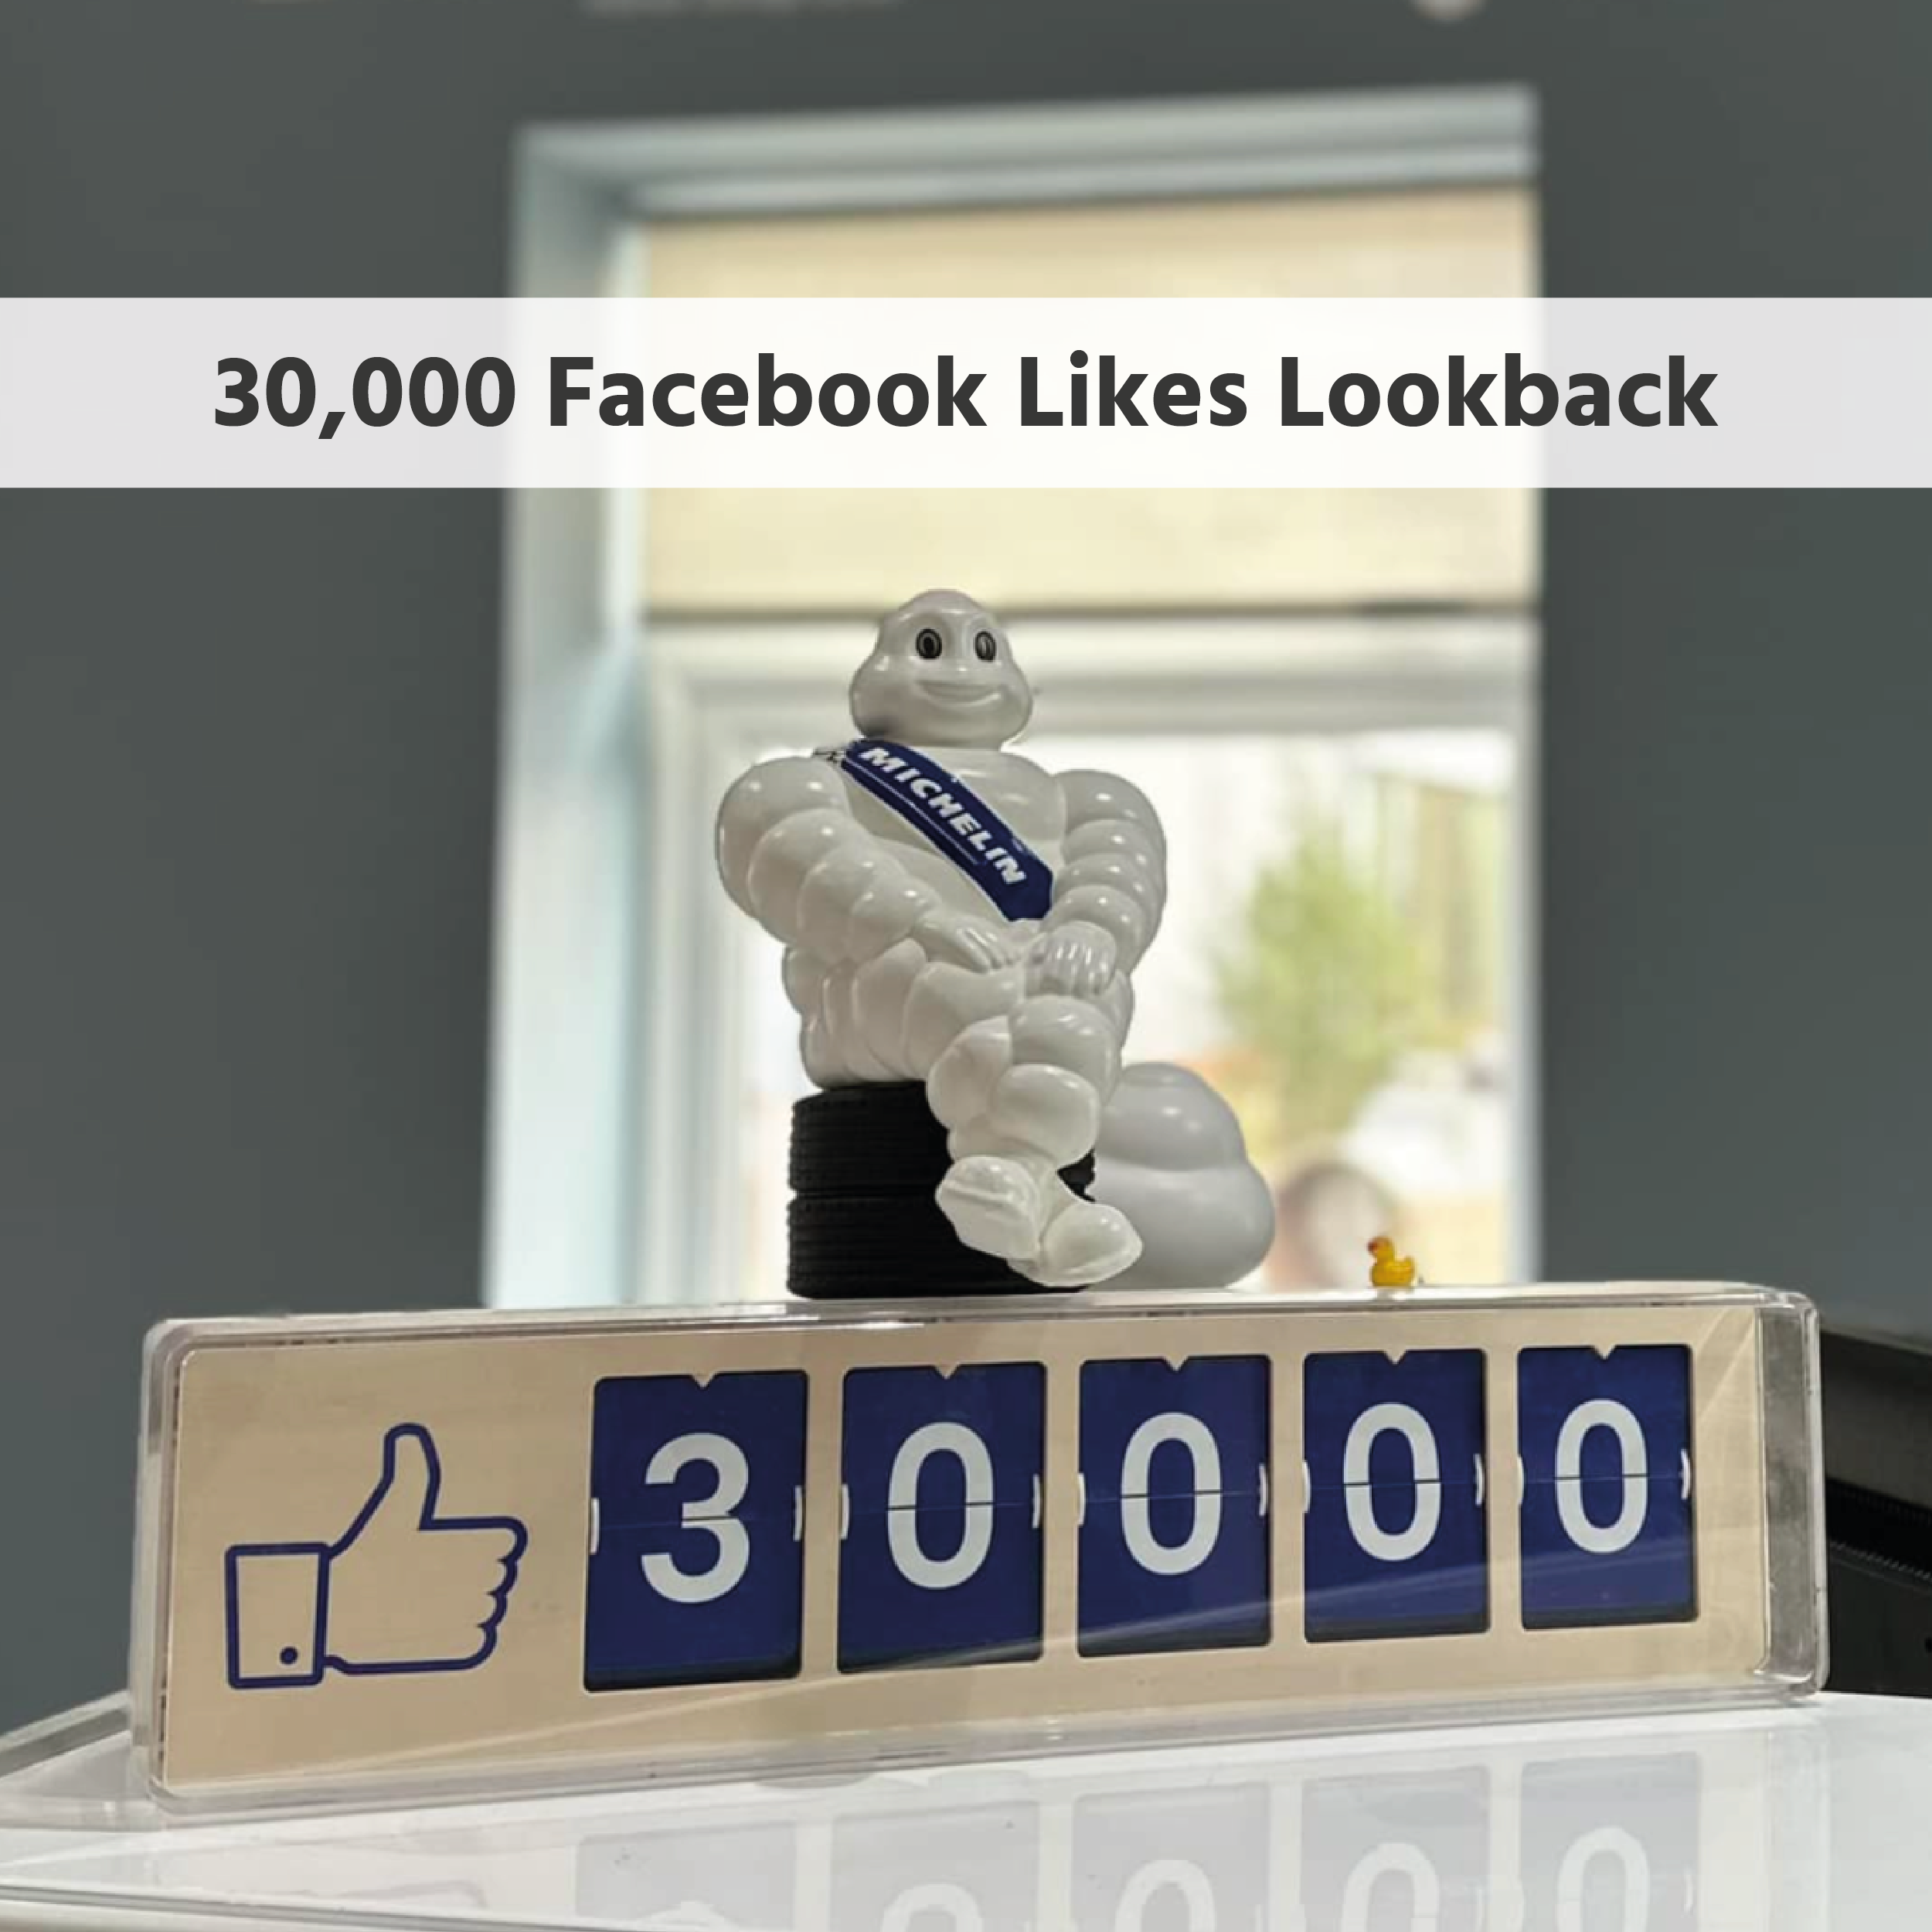 30,000 Facebook Likes Lookback